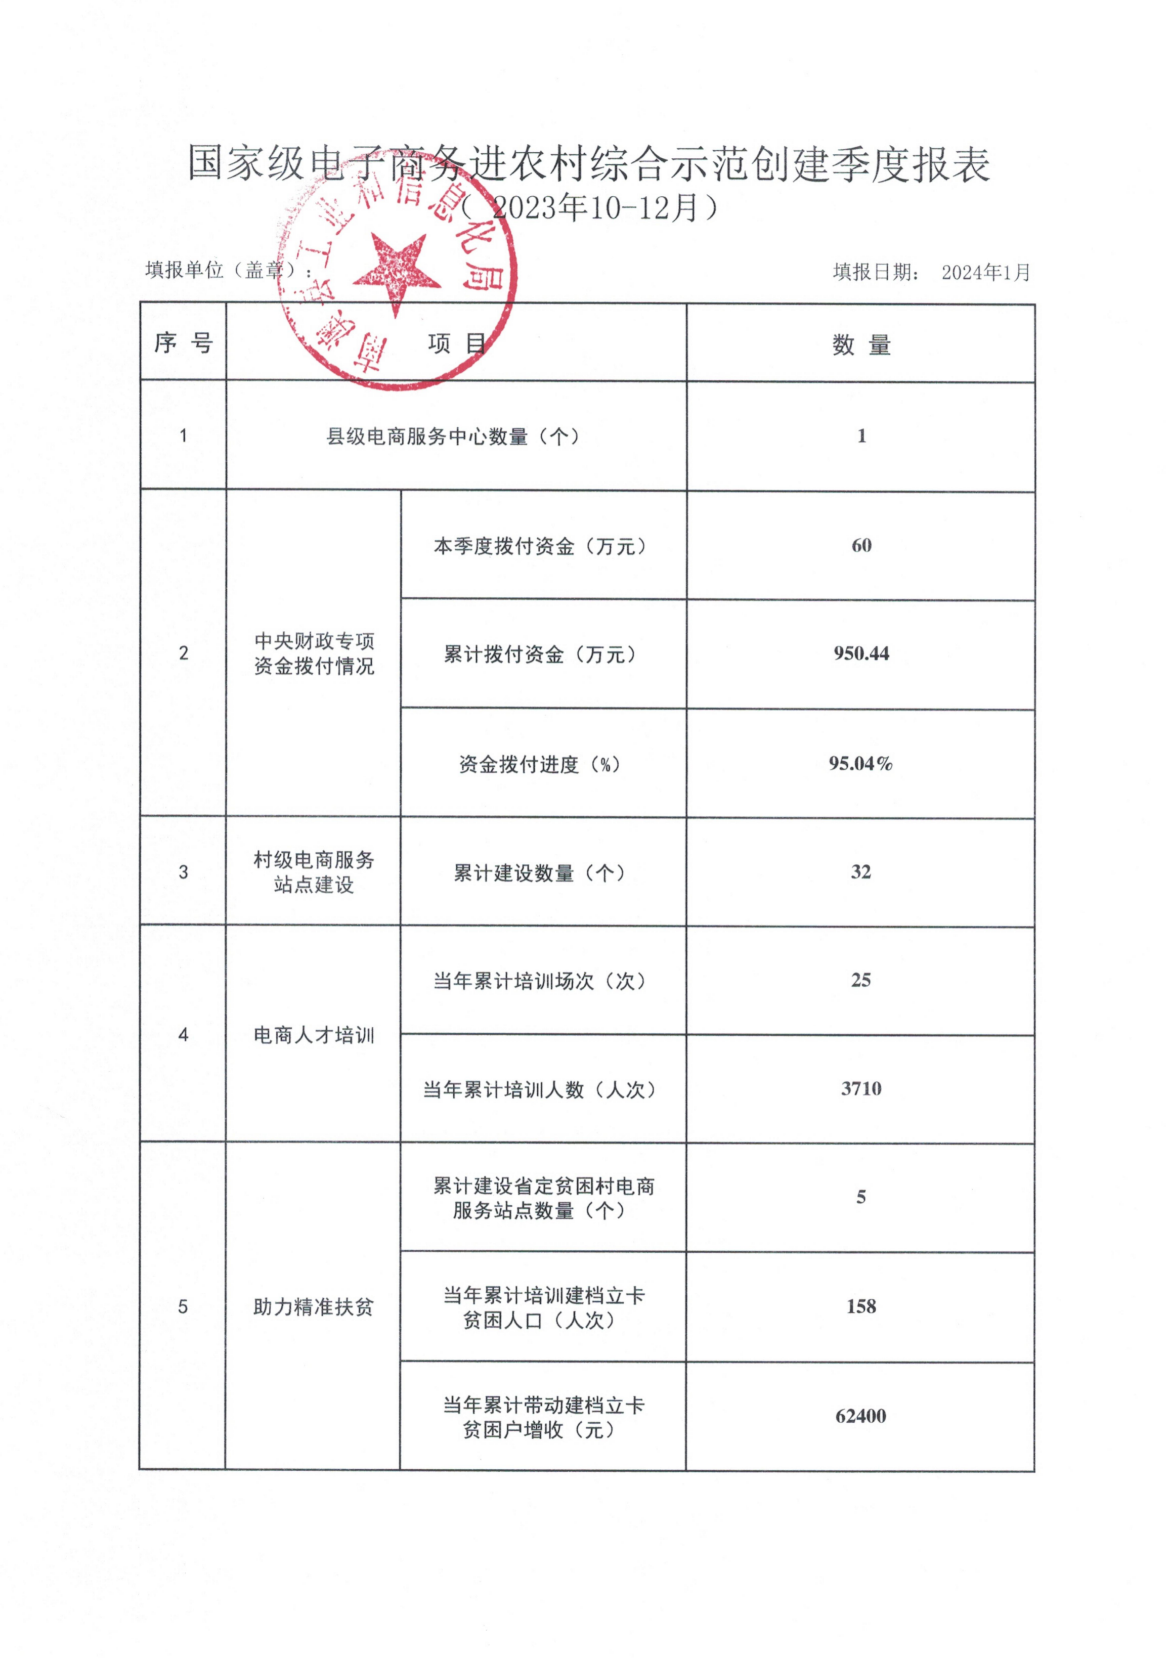 国家级电子商务进农村综合示范创建季度报表_202310-12.jpg